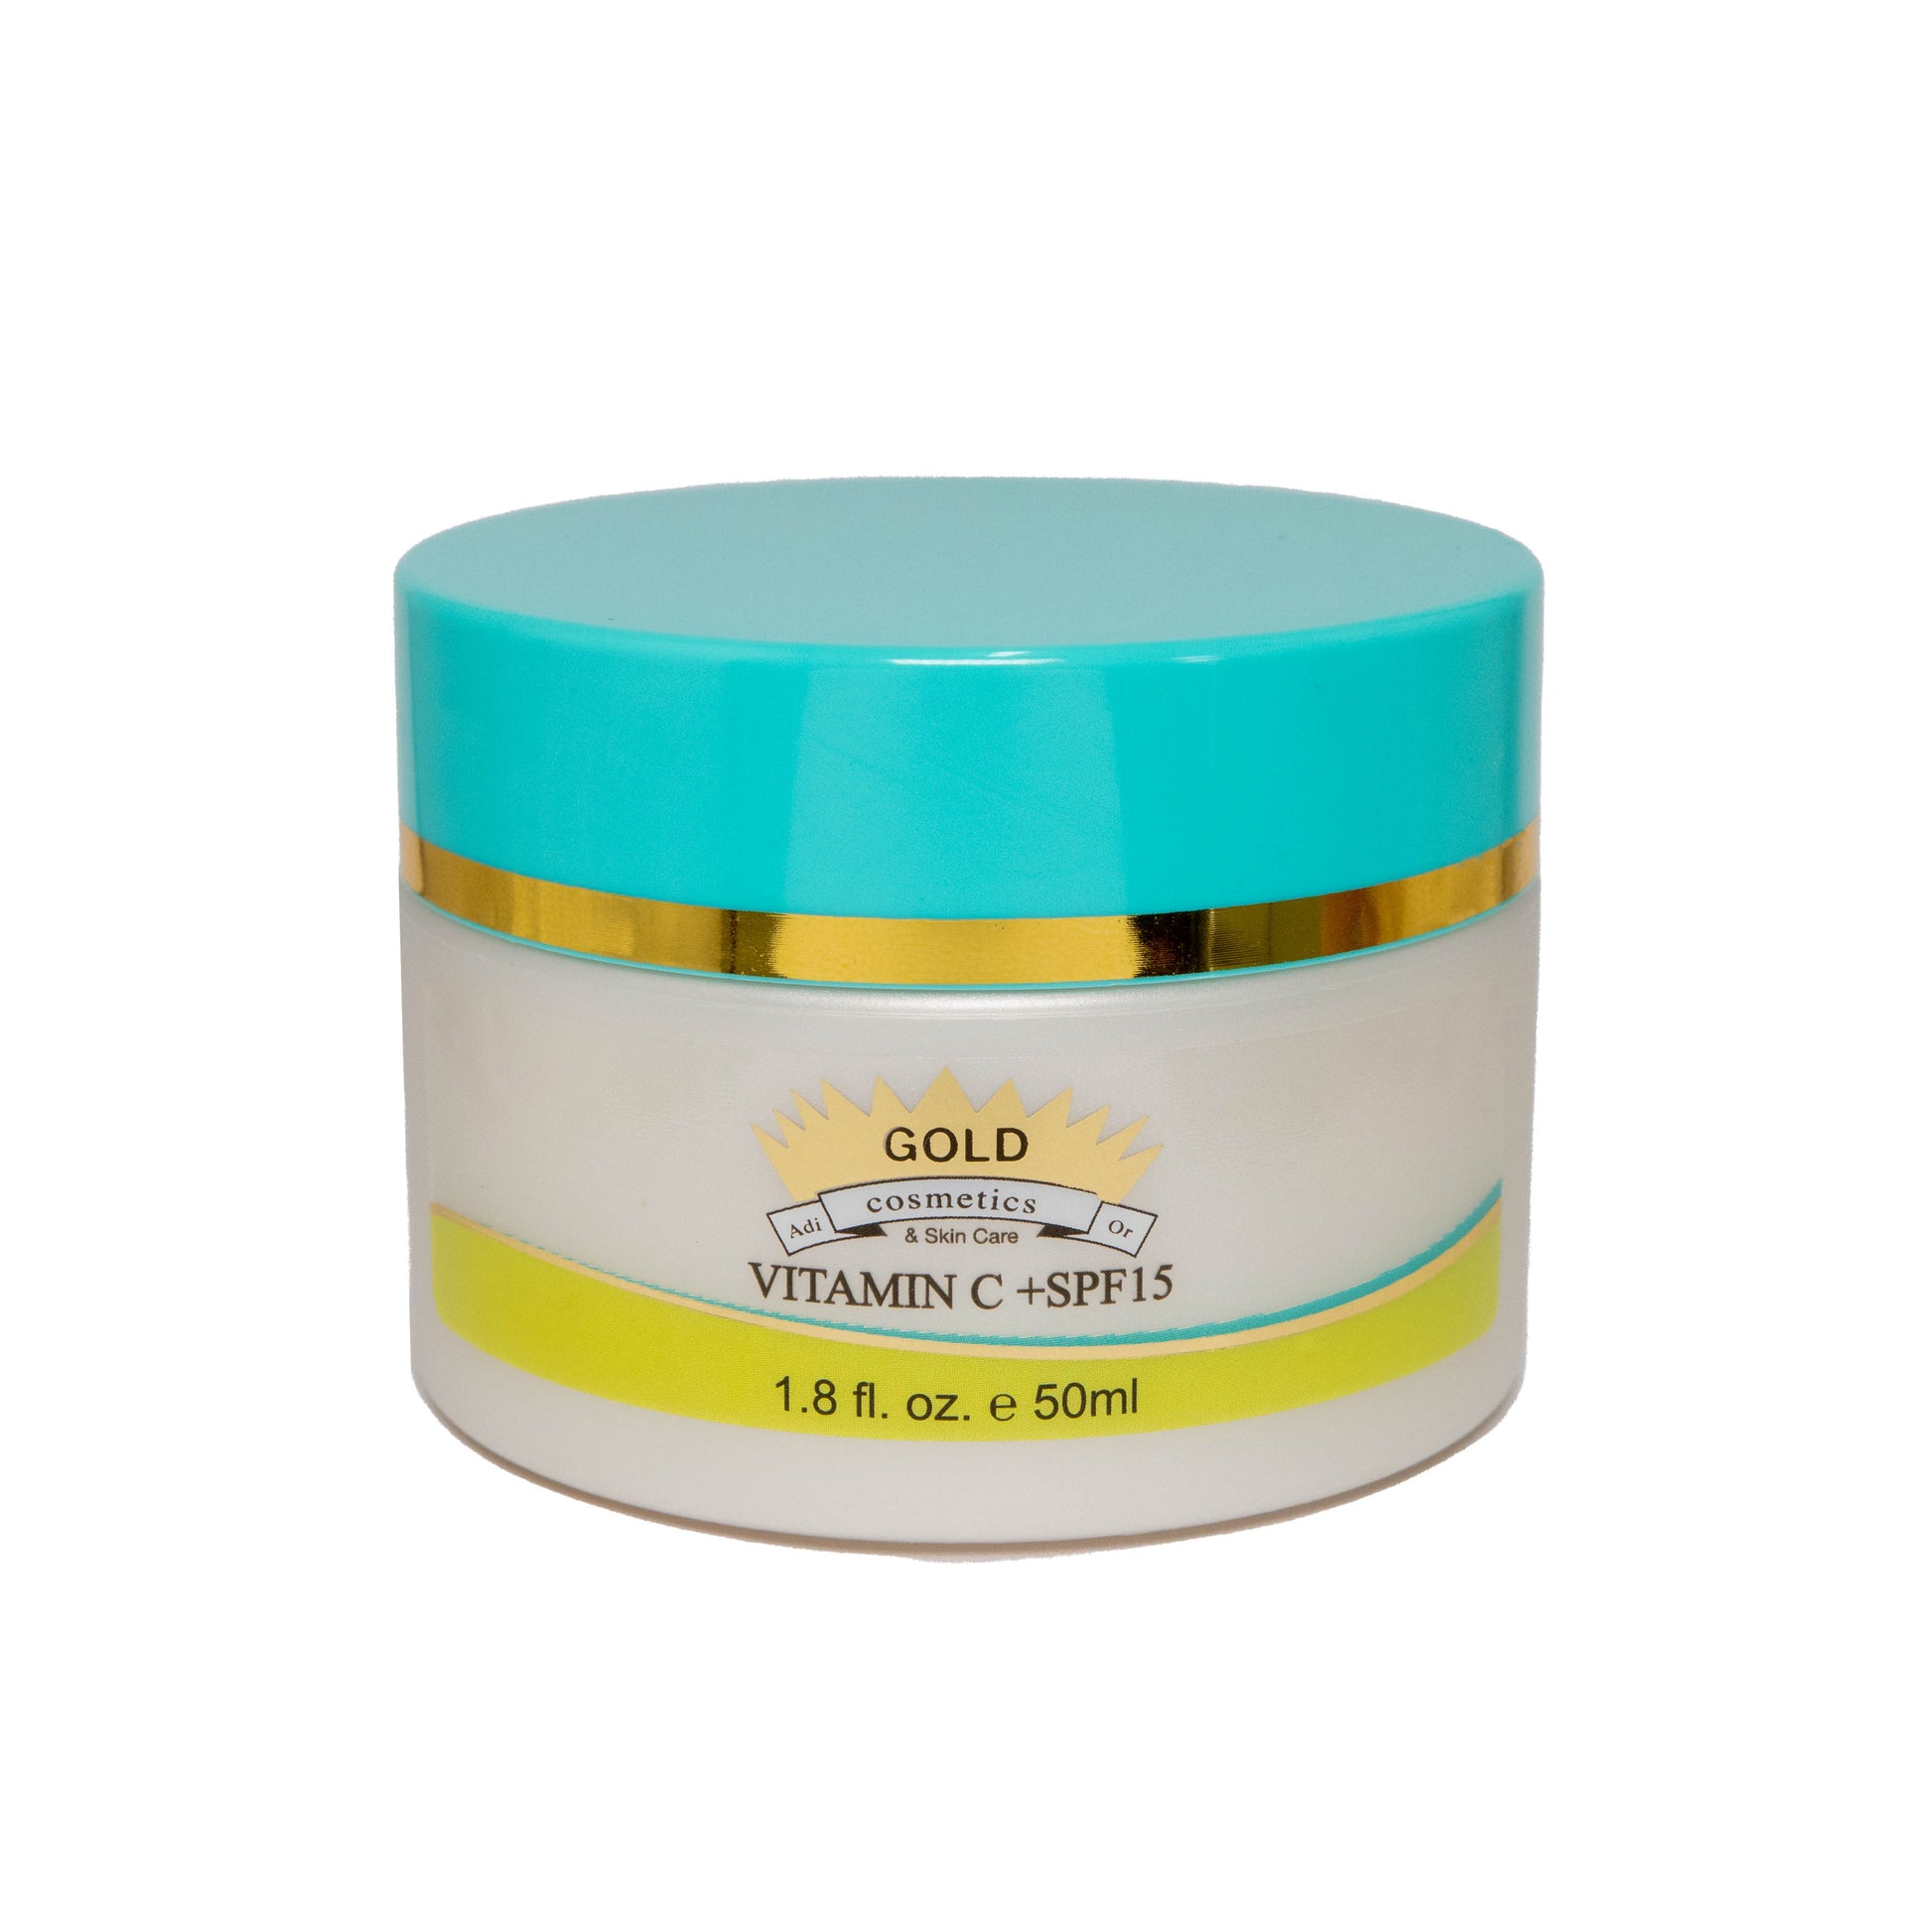 Gold Cosmetics | Vitamin C Cream + SPF 15 | 50 ml - Gold Cosmetics & Skin Care